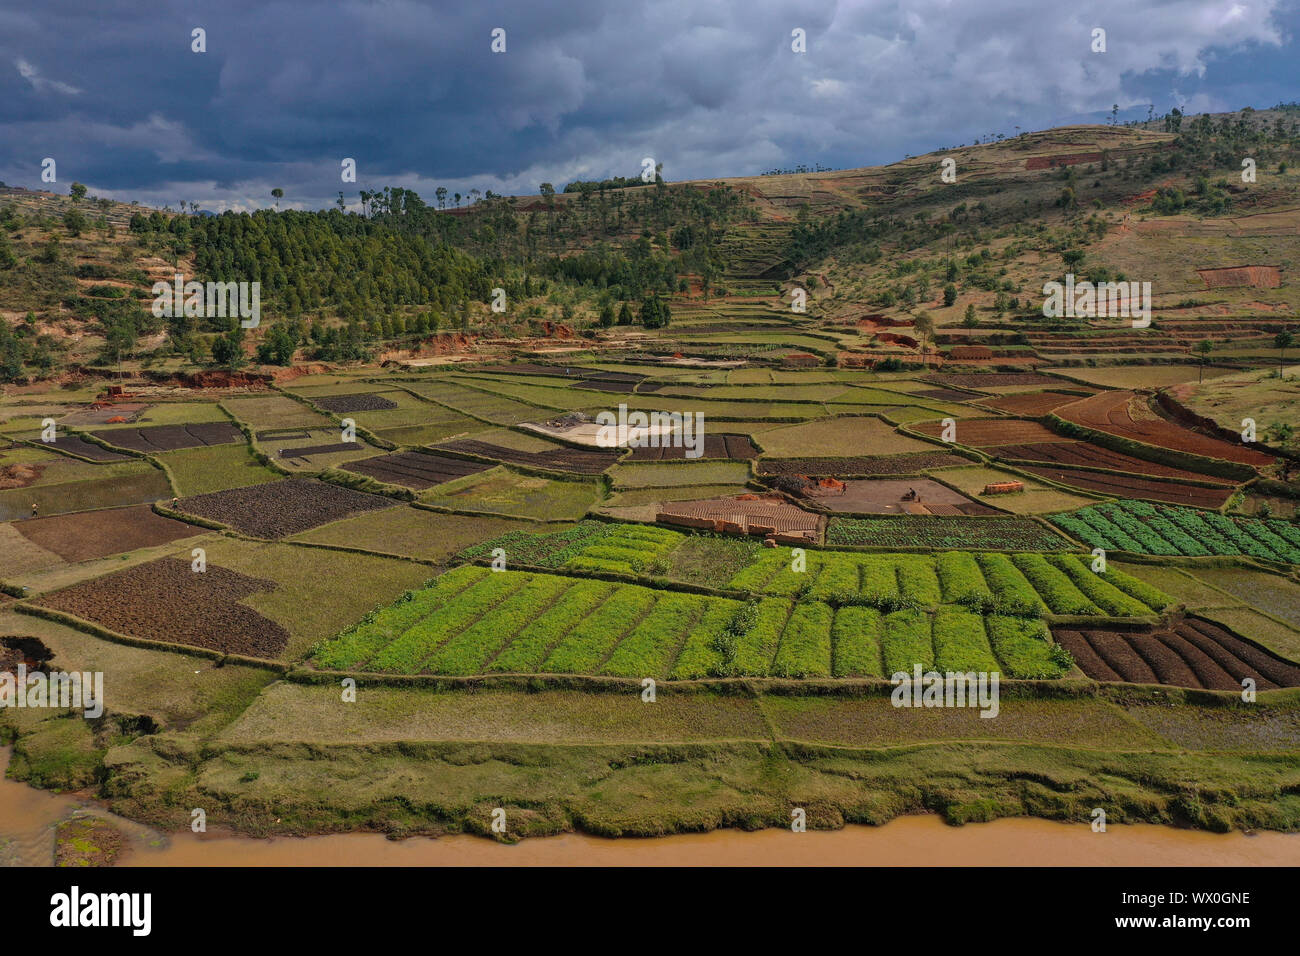 La culture de légumes et la fabrication de briques sur les champs de riz, la route nationale RN7 entre Antsirabe et Antananarivo, Madagascar, Afrique Banque D'Images